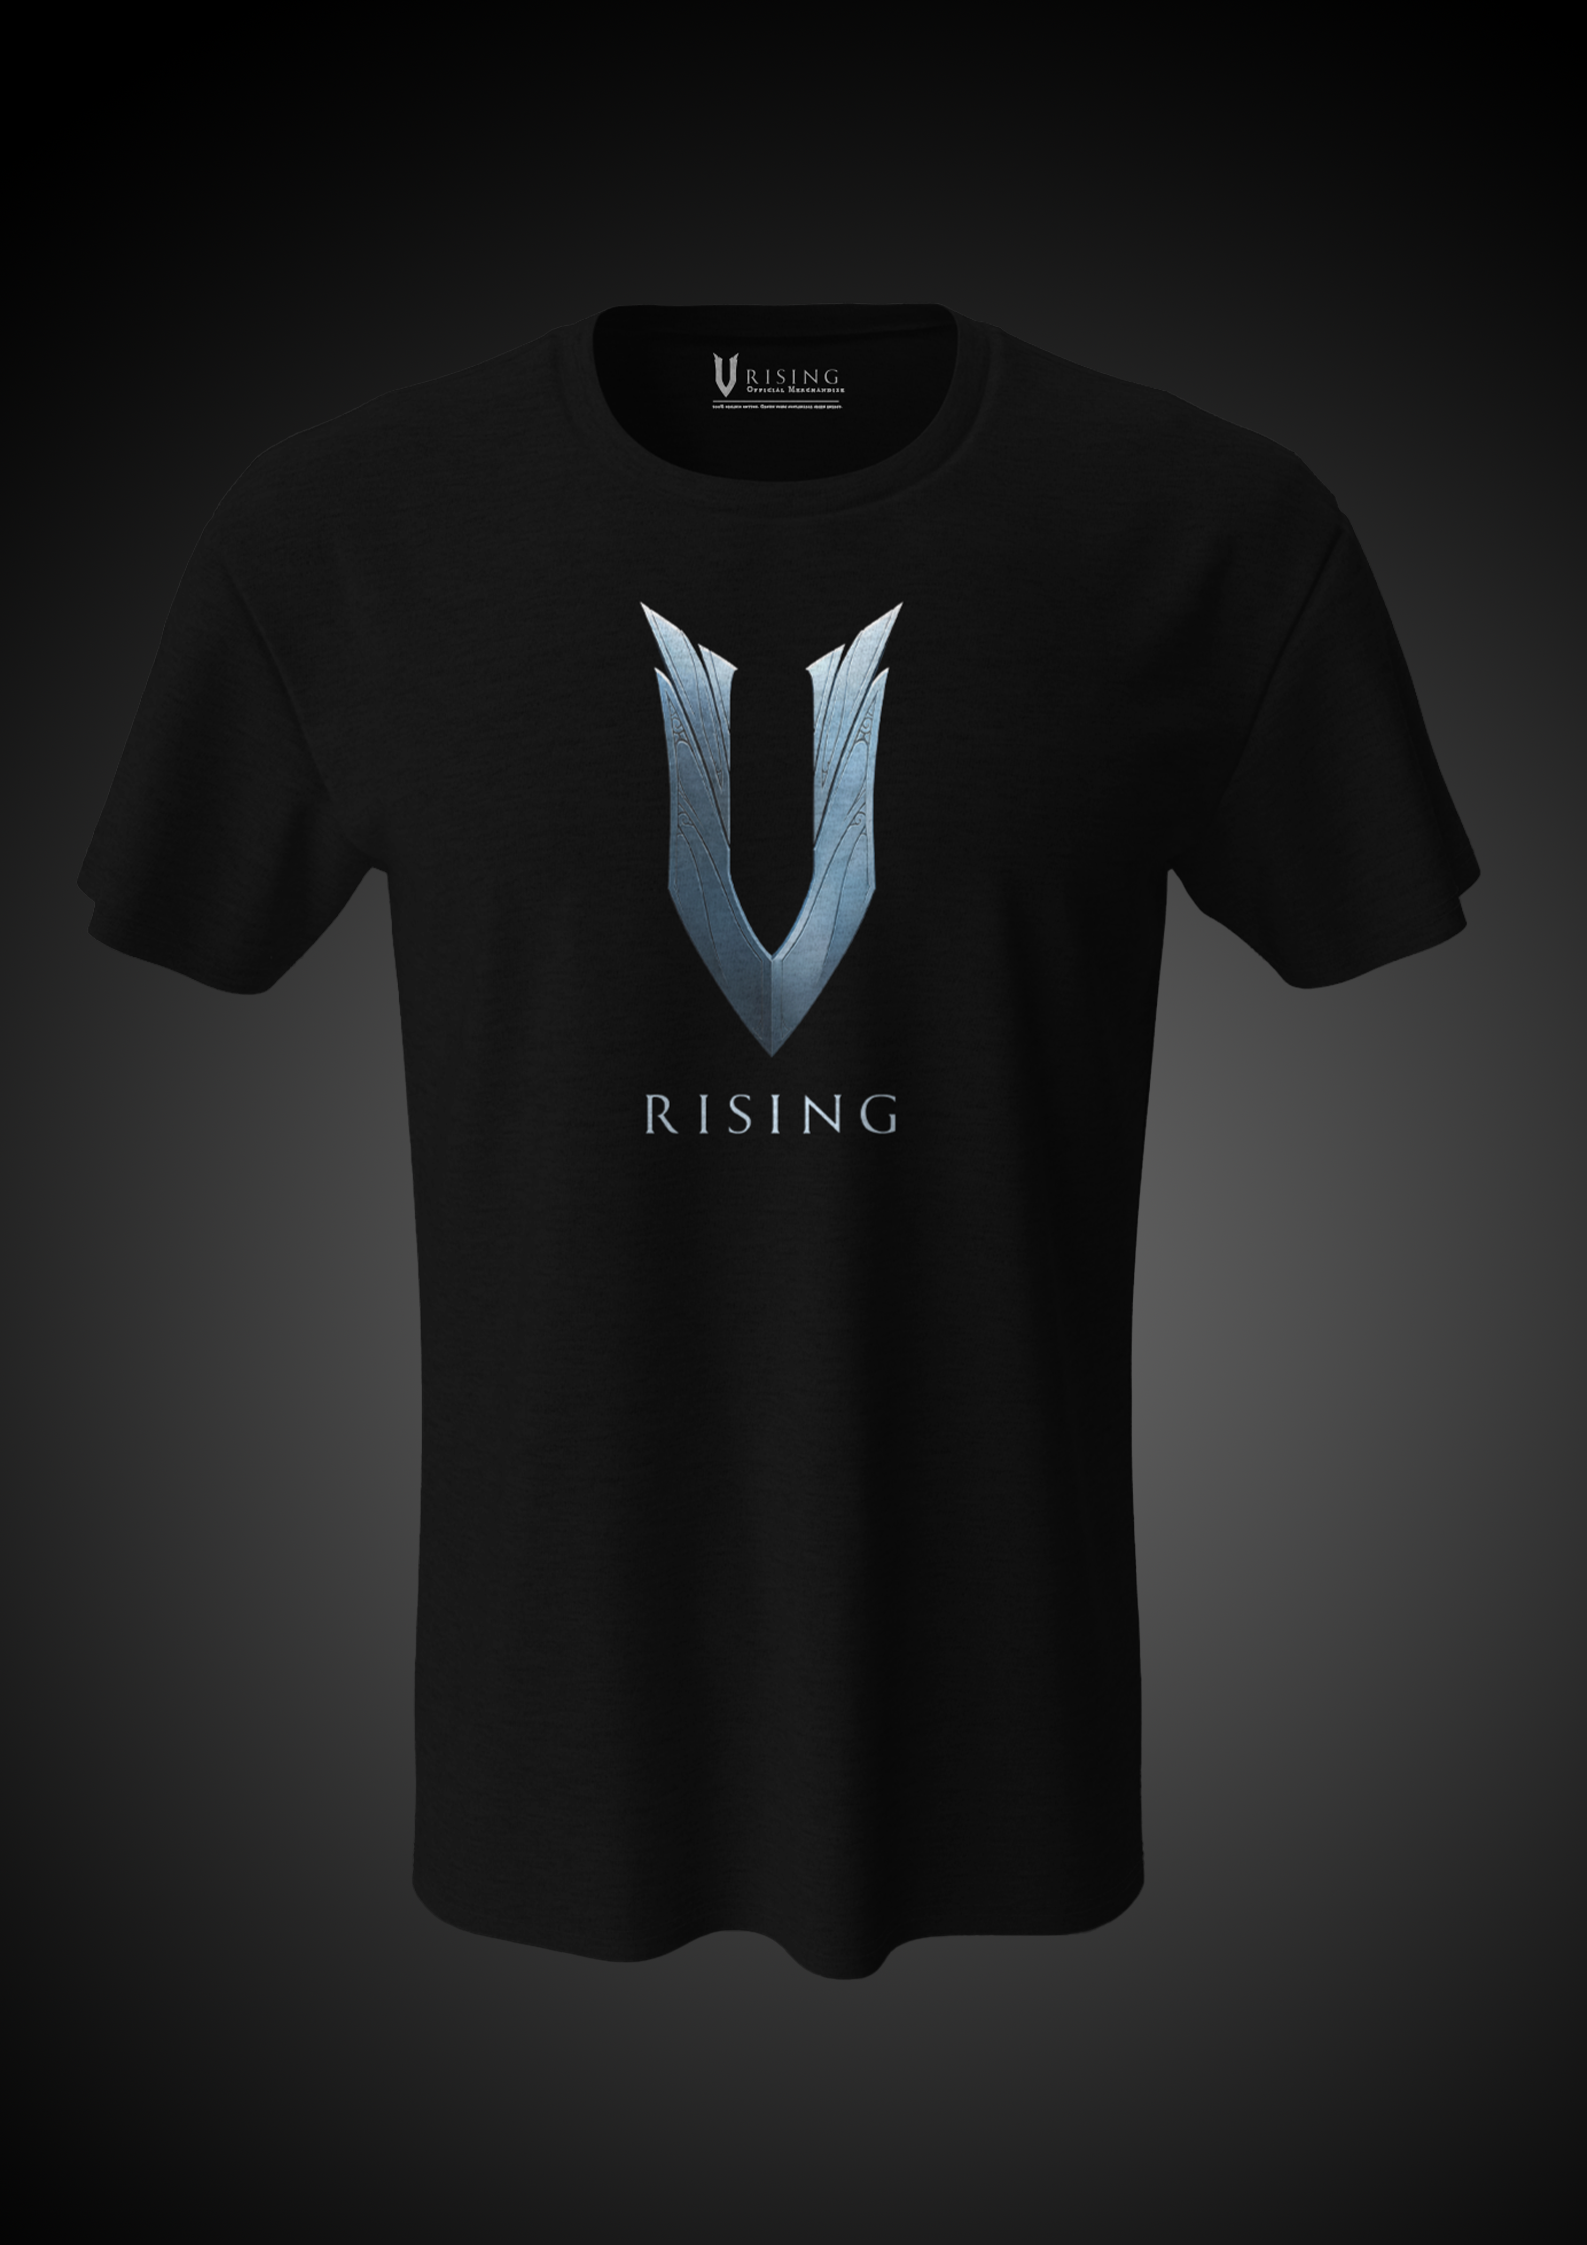 V Rising T-shirt